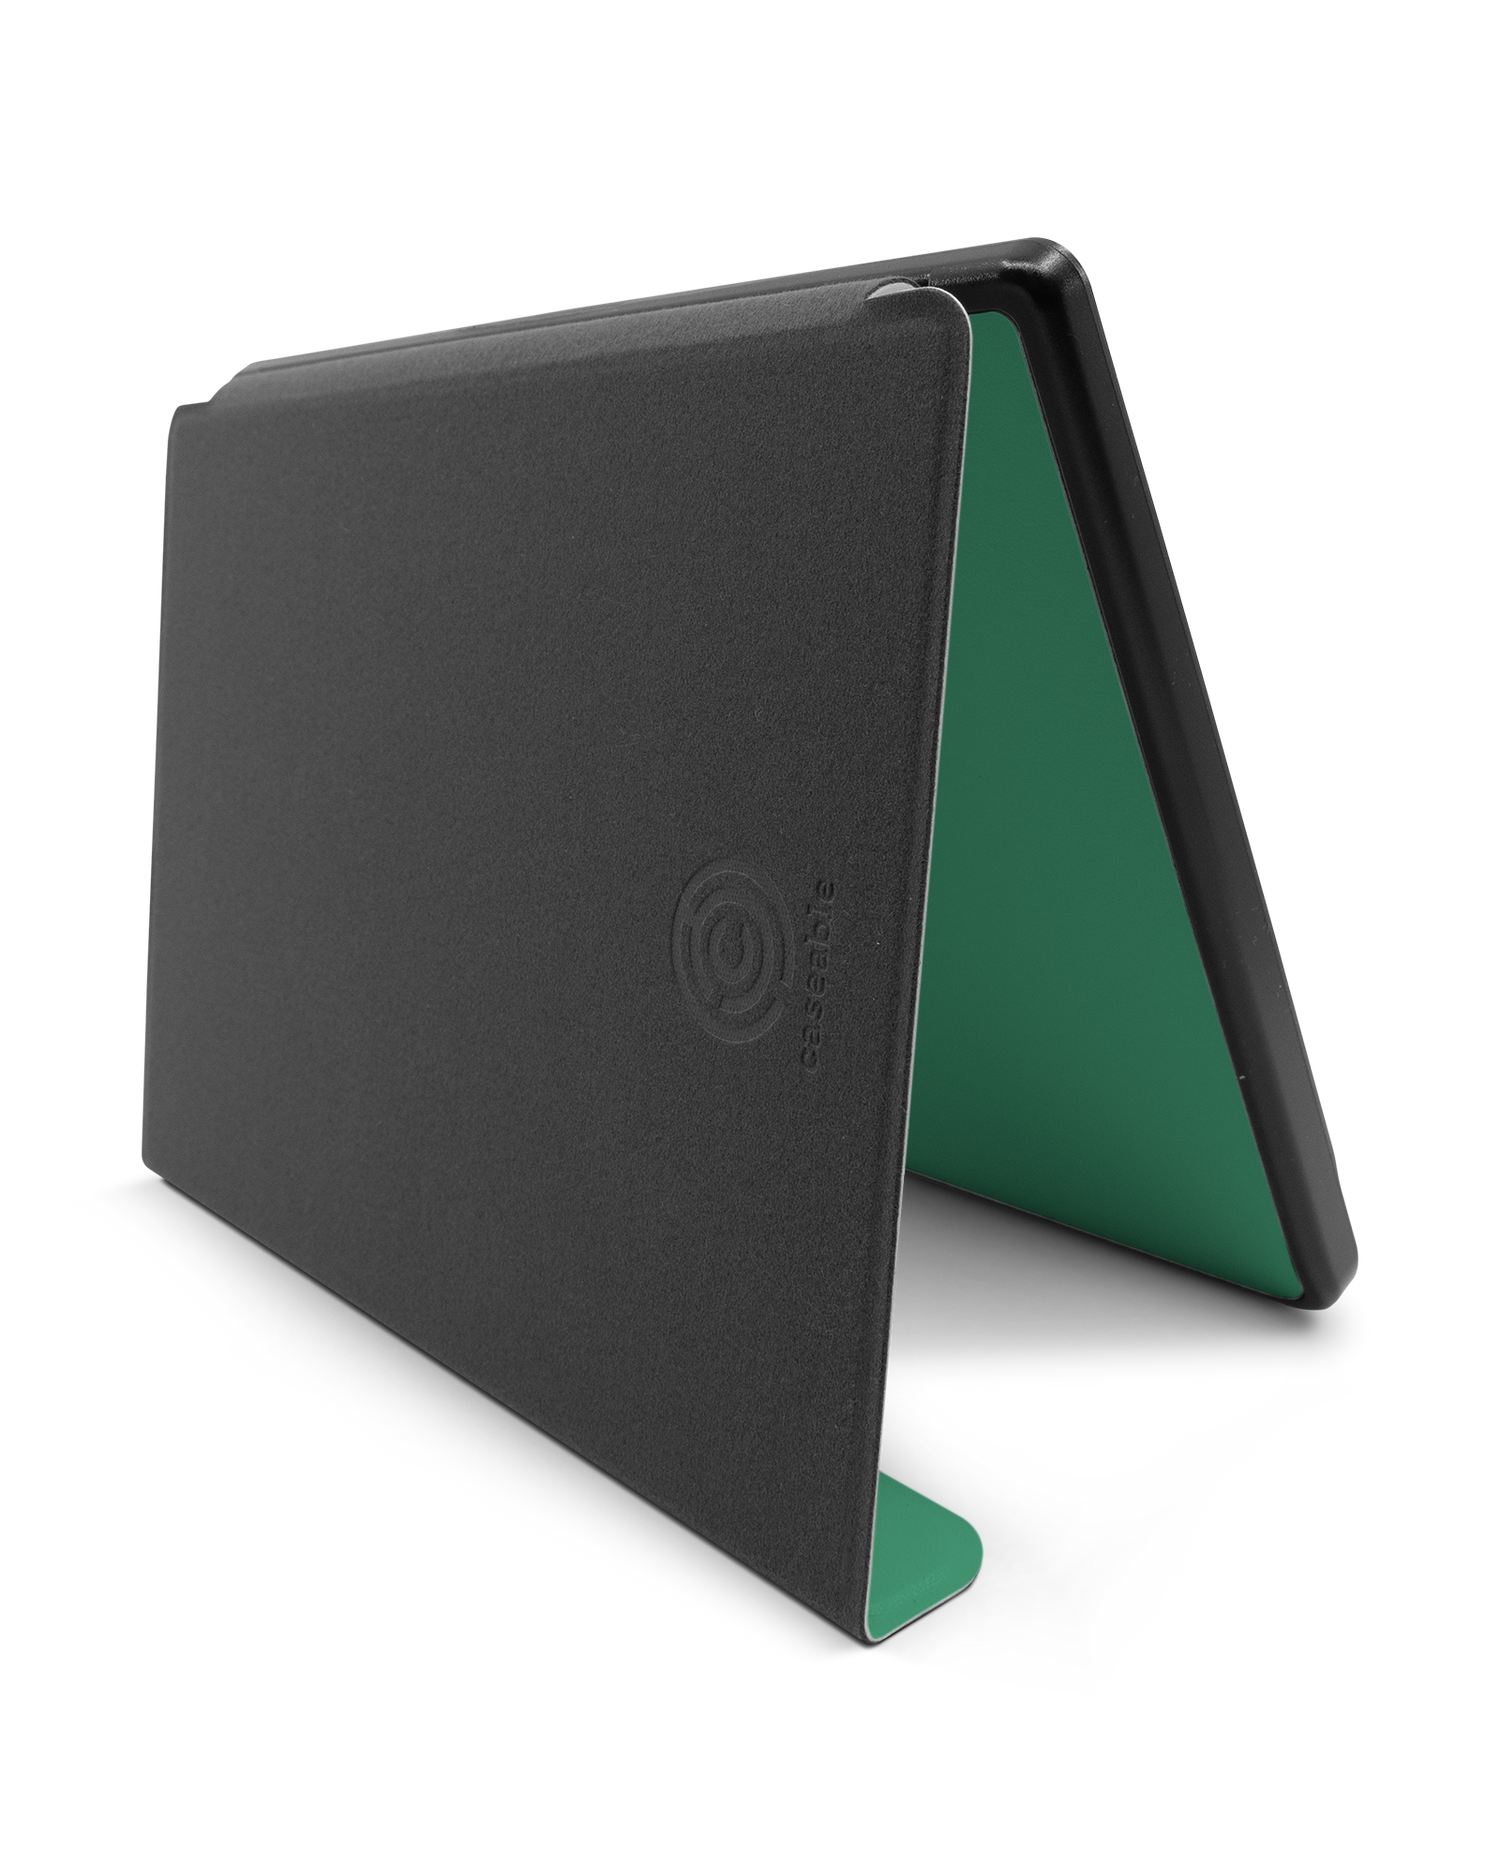 ISG Neon Green eBook Reader Smart Case für tolino epos 2: Aufgestellt im Querformat